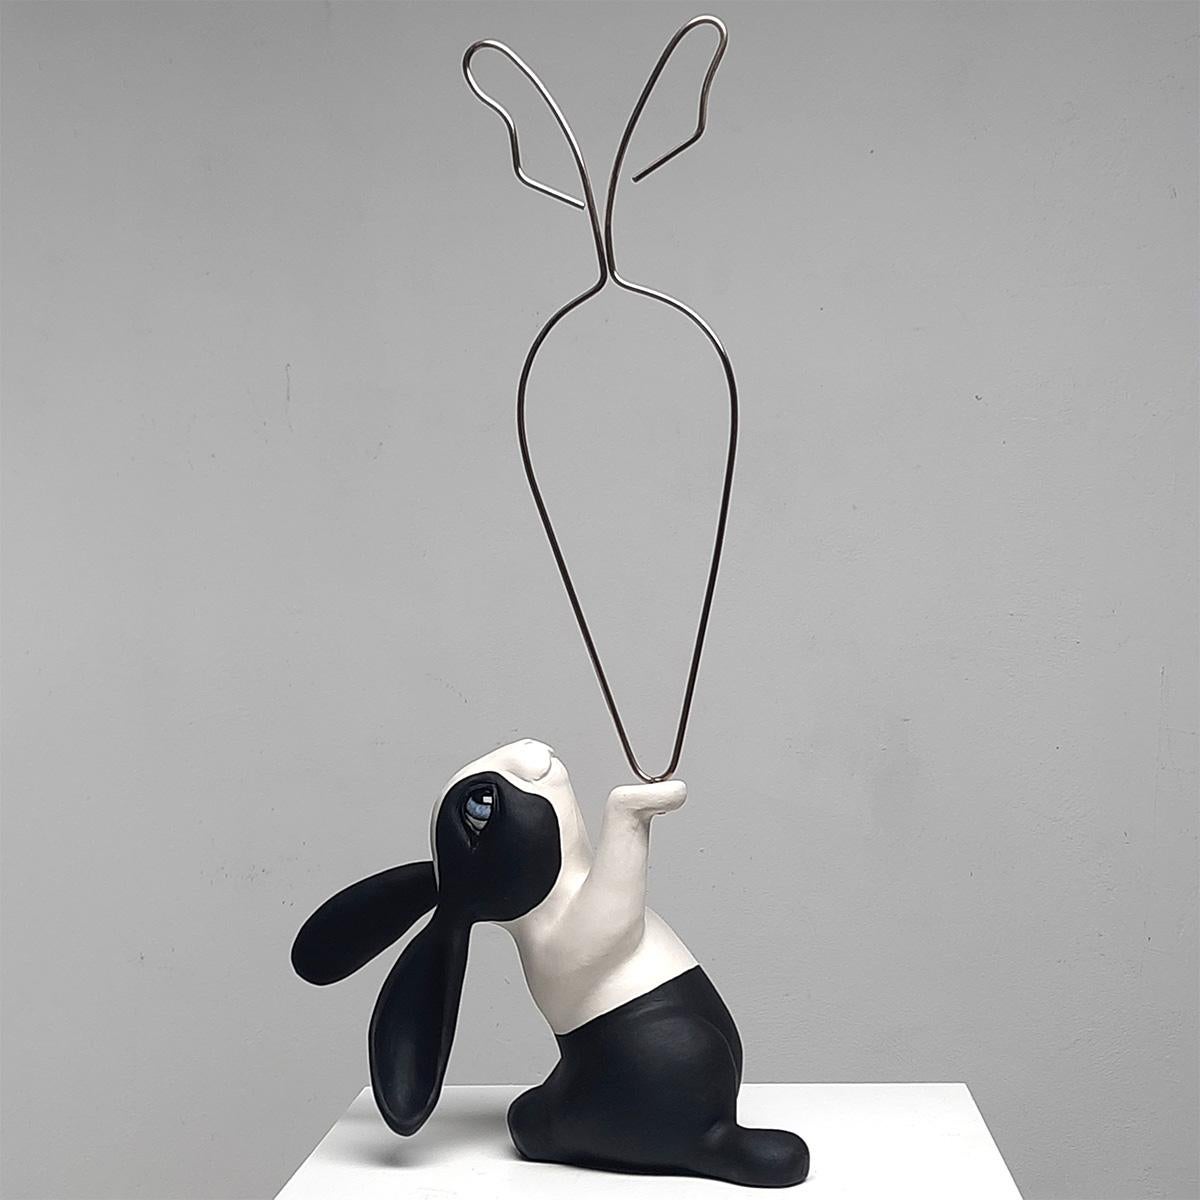 24 Carrot Gold-originelle realistische Skulptur aus der Tierwelt-Kunstwerk-zeitgenössische Kunst – Sculpture von Henk Jan Sanderman